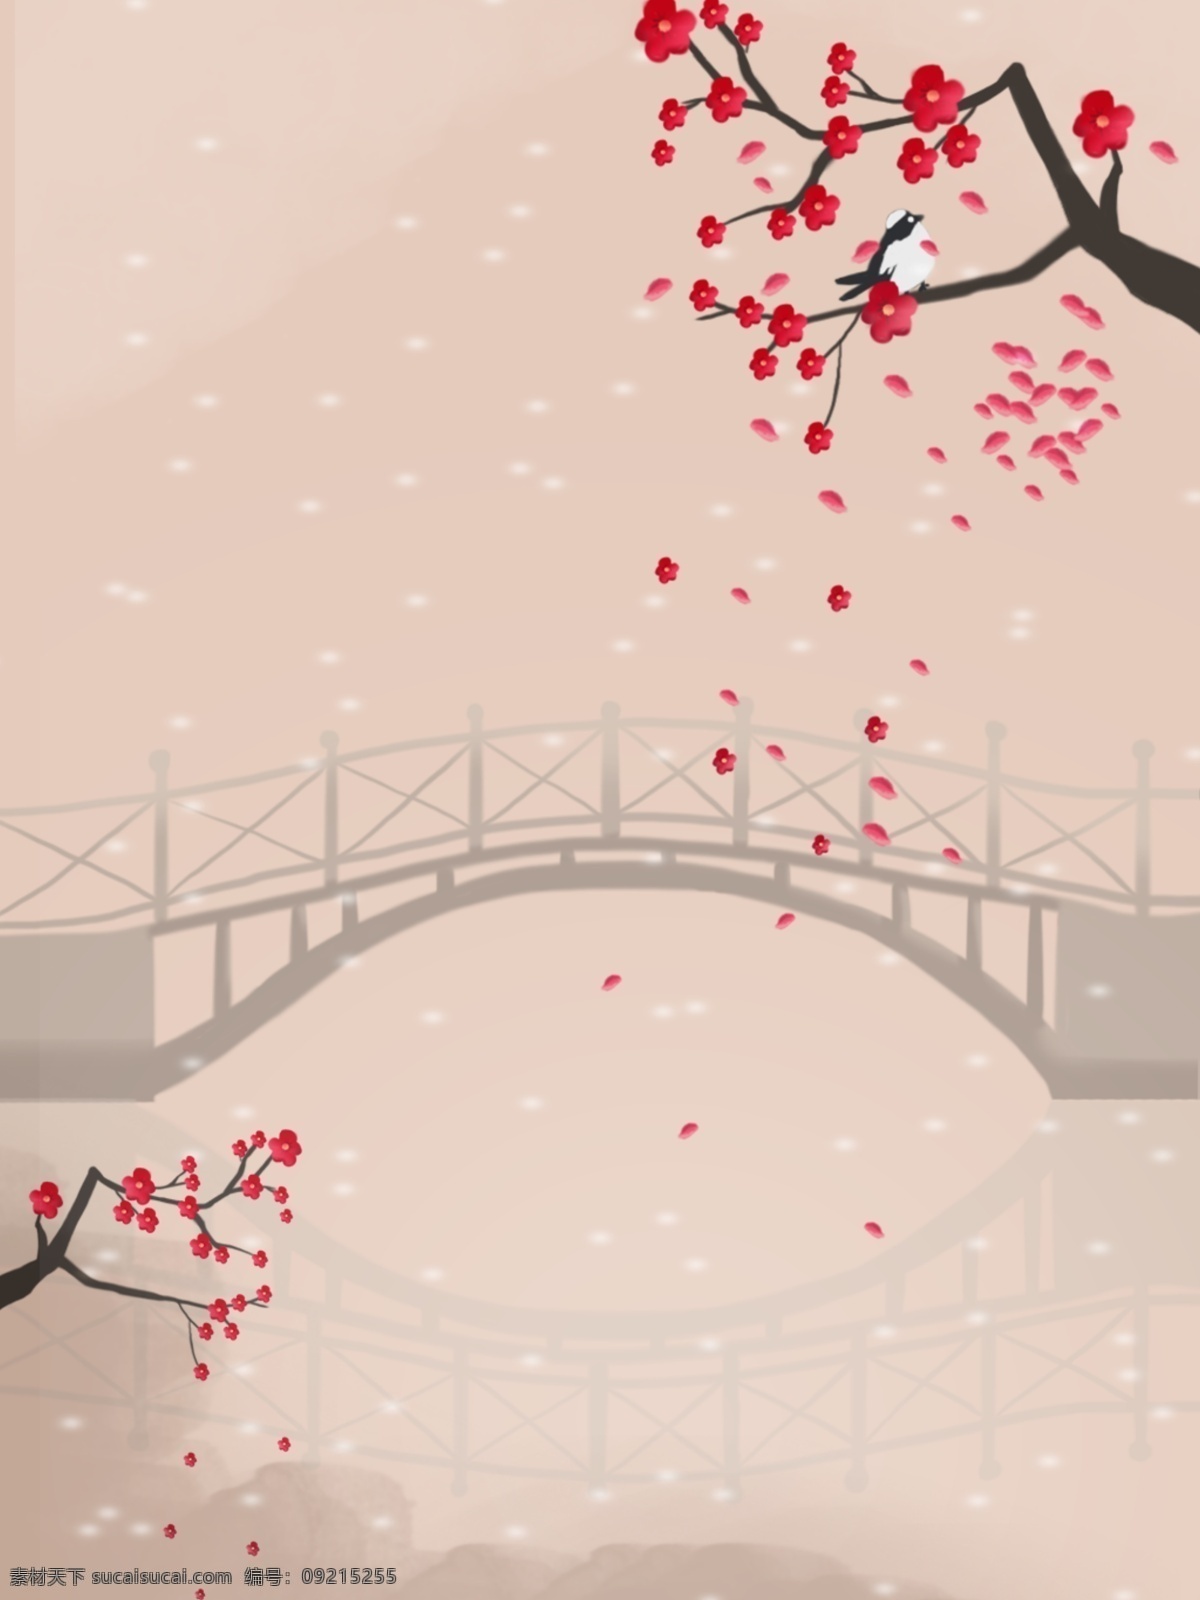 小桥流水 喜鹊 梅花 海报 莫兰迪 小桥 流水 背景素材 底纹边框 背景底纹